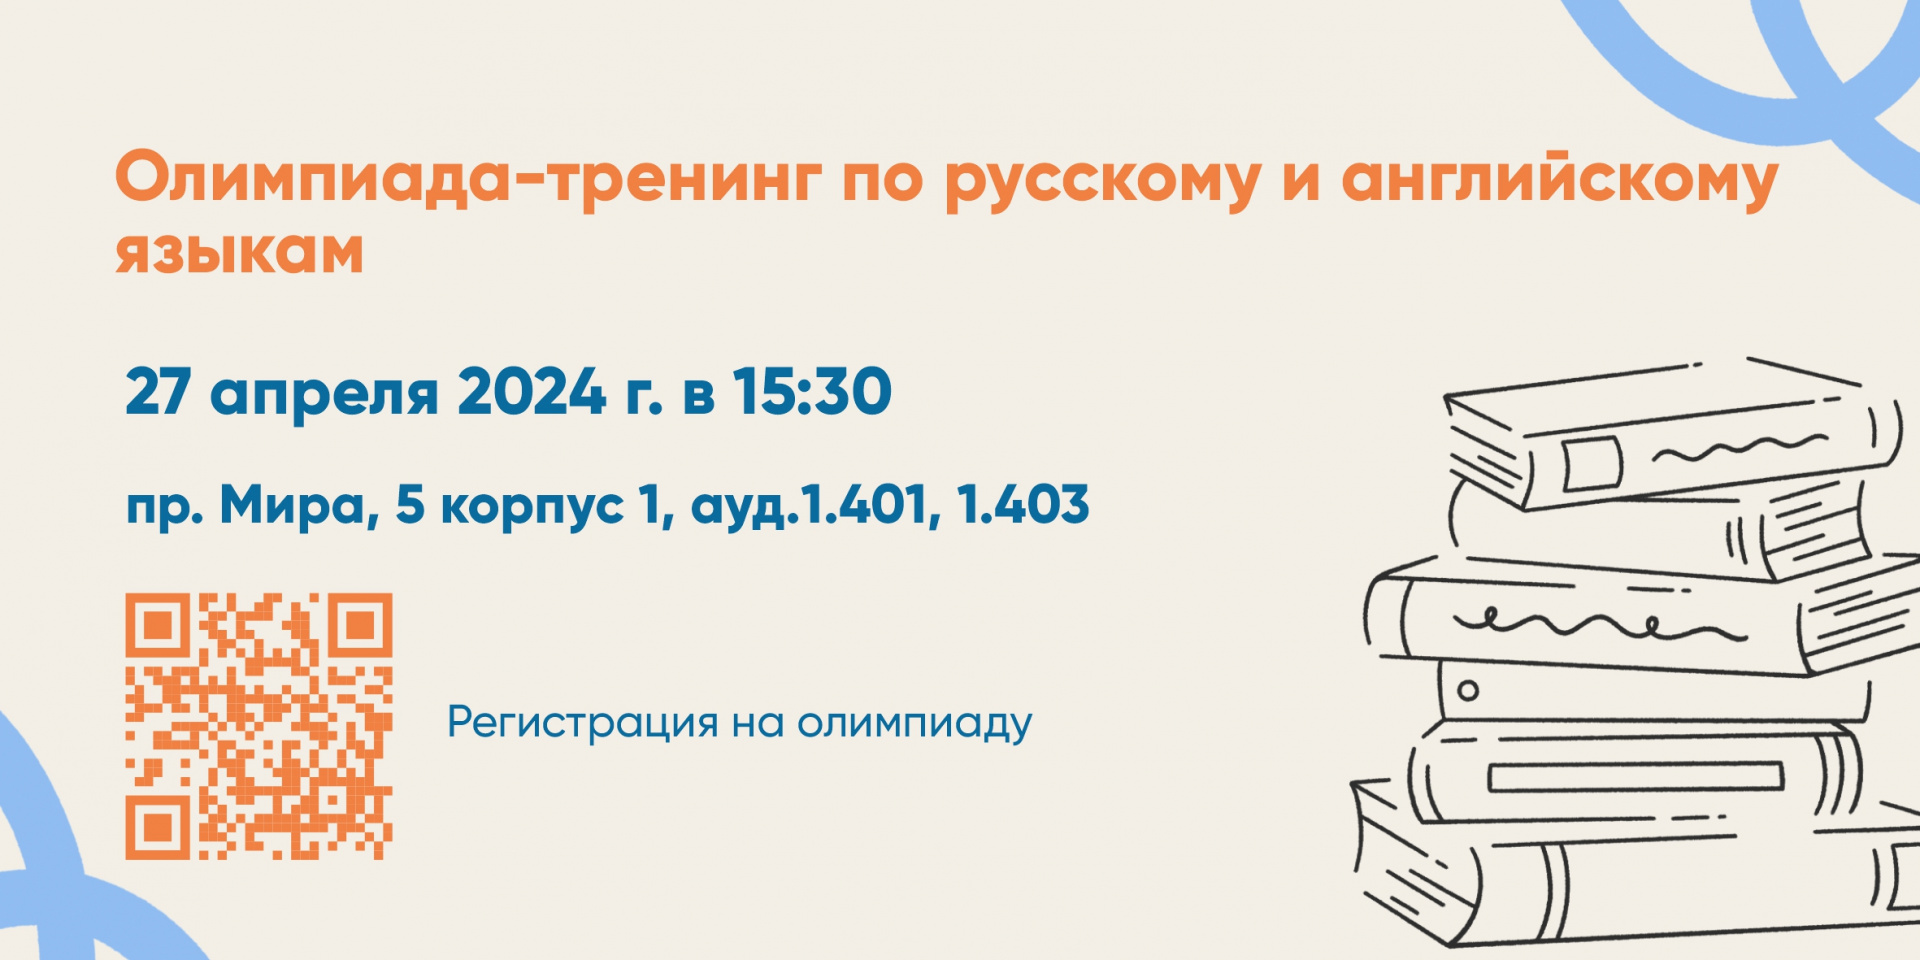 Олимпиада по русскому и английскому языкам для 10-11 классов